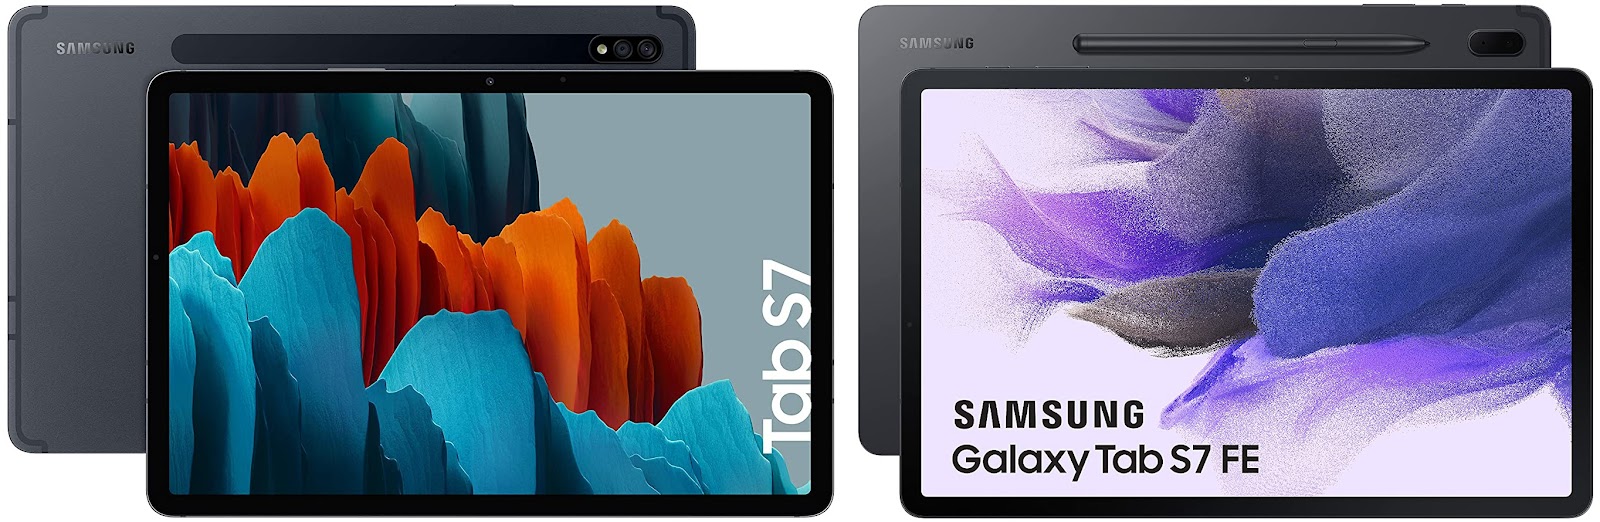 Samsung Galaxy Tab S7 vs Samsung Galaxy Tab S7 FE